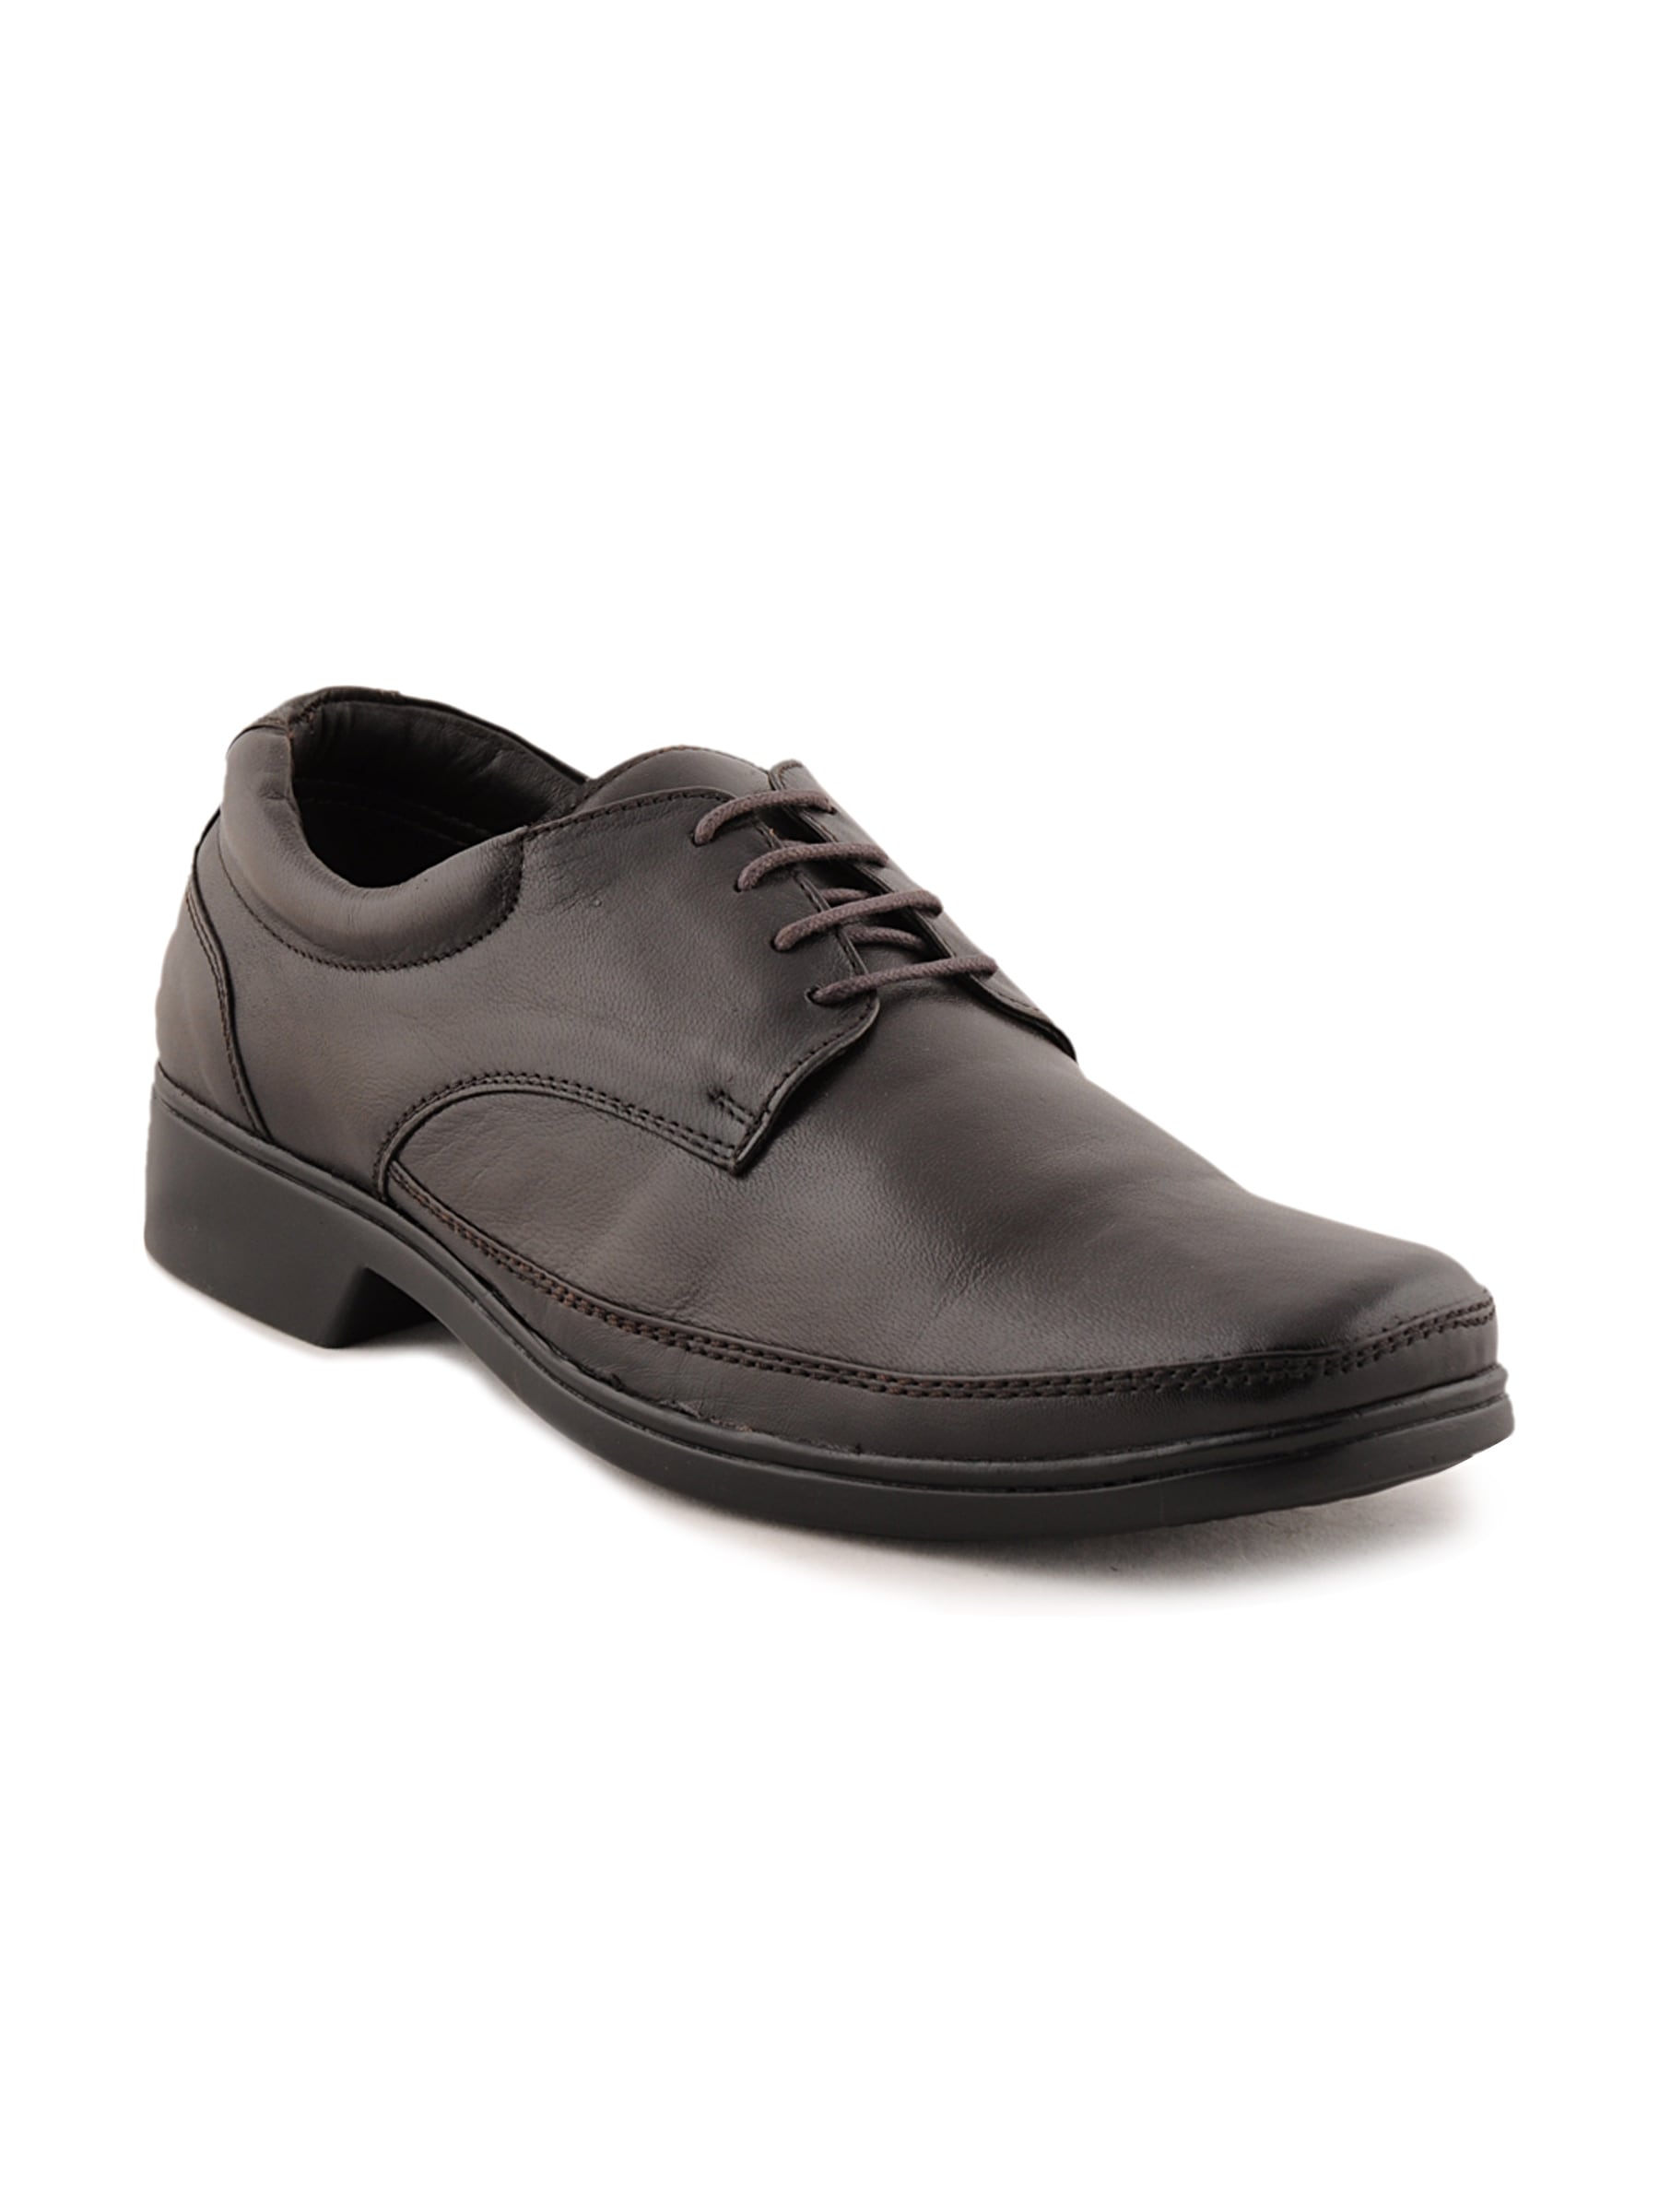 Franco Leone Men Formal Brown Formal Shoes